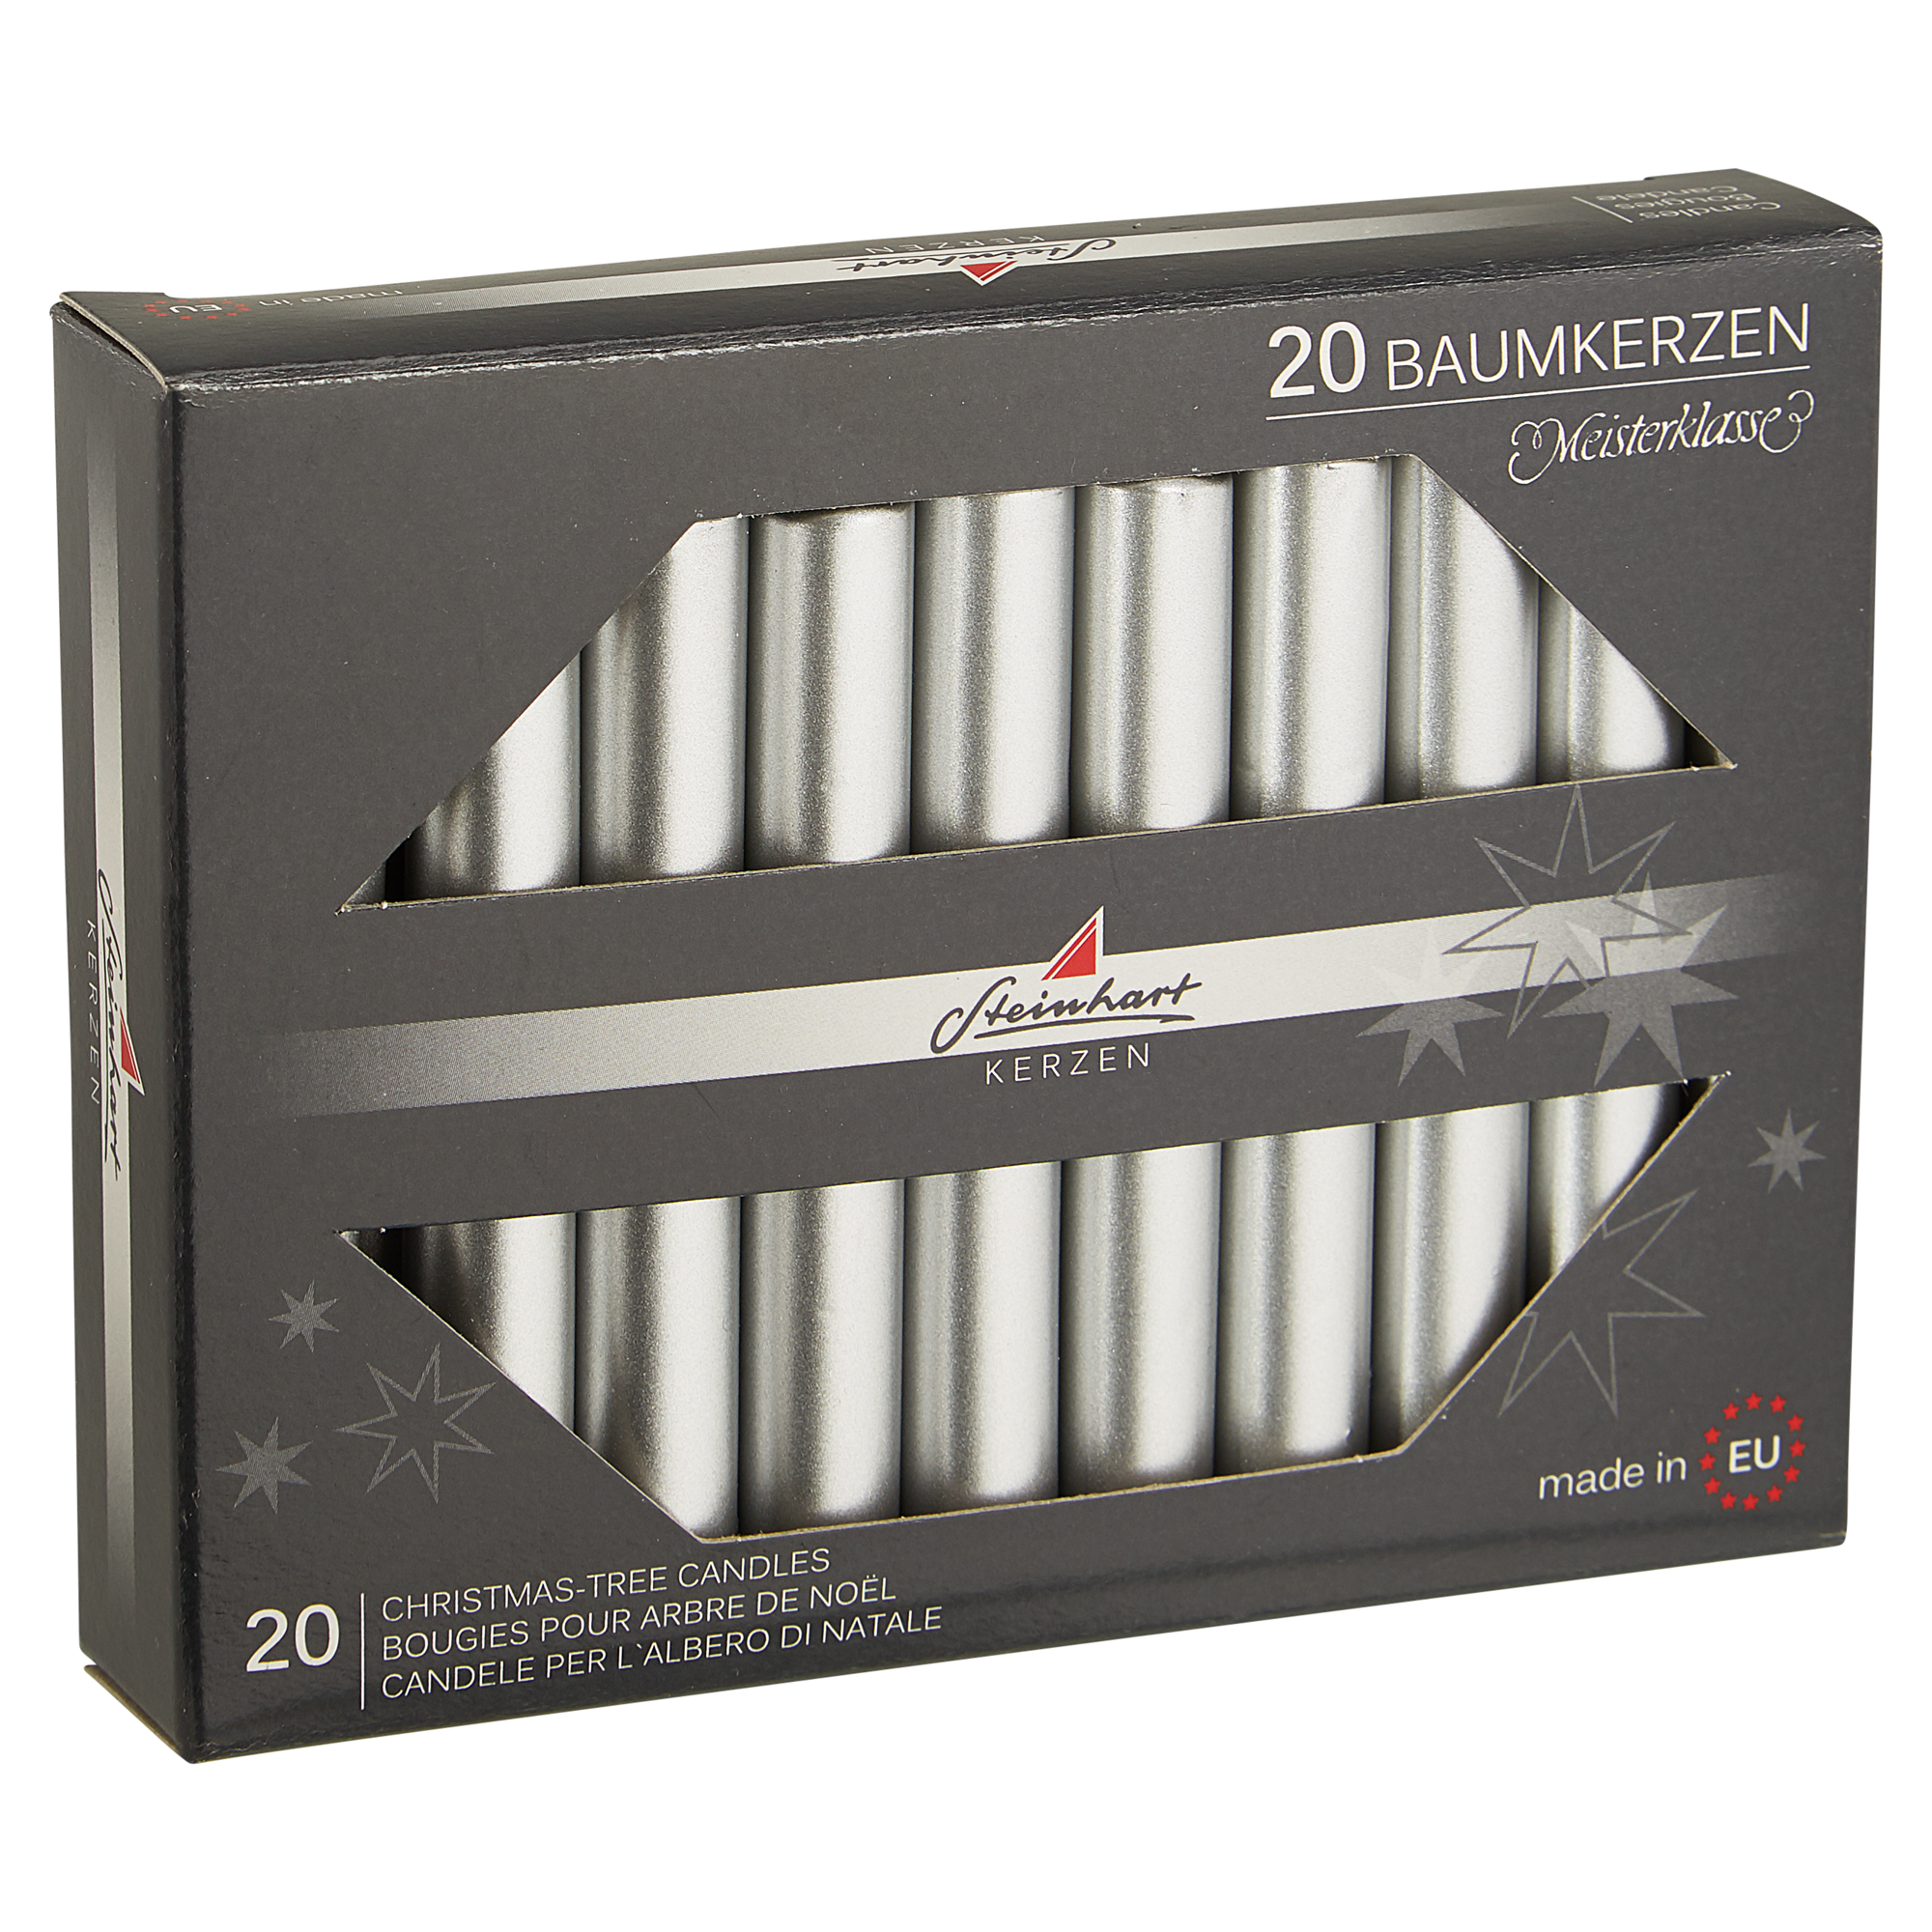 Baumkerzen 'Edelglanz' silbern Ø 1,3 x 9,5 cm, 20 Stück + product picture